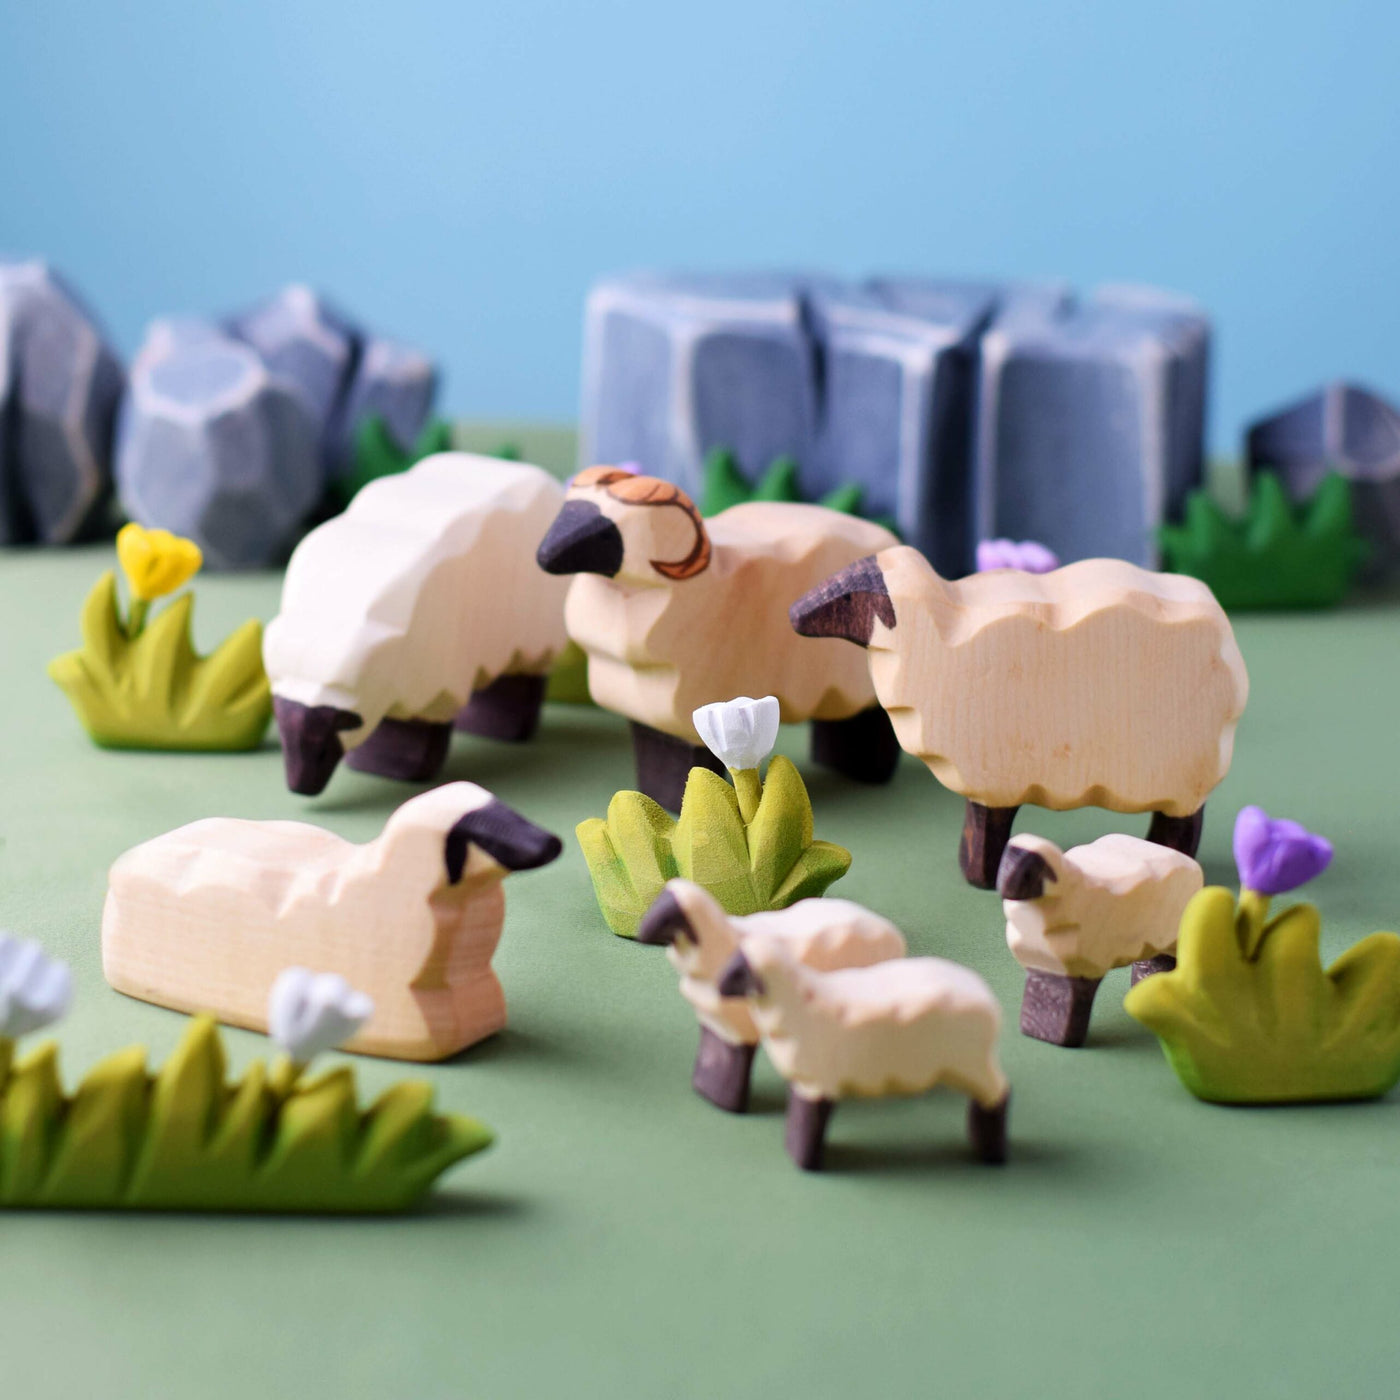 Bumbu Flock of Sheep